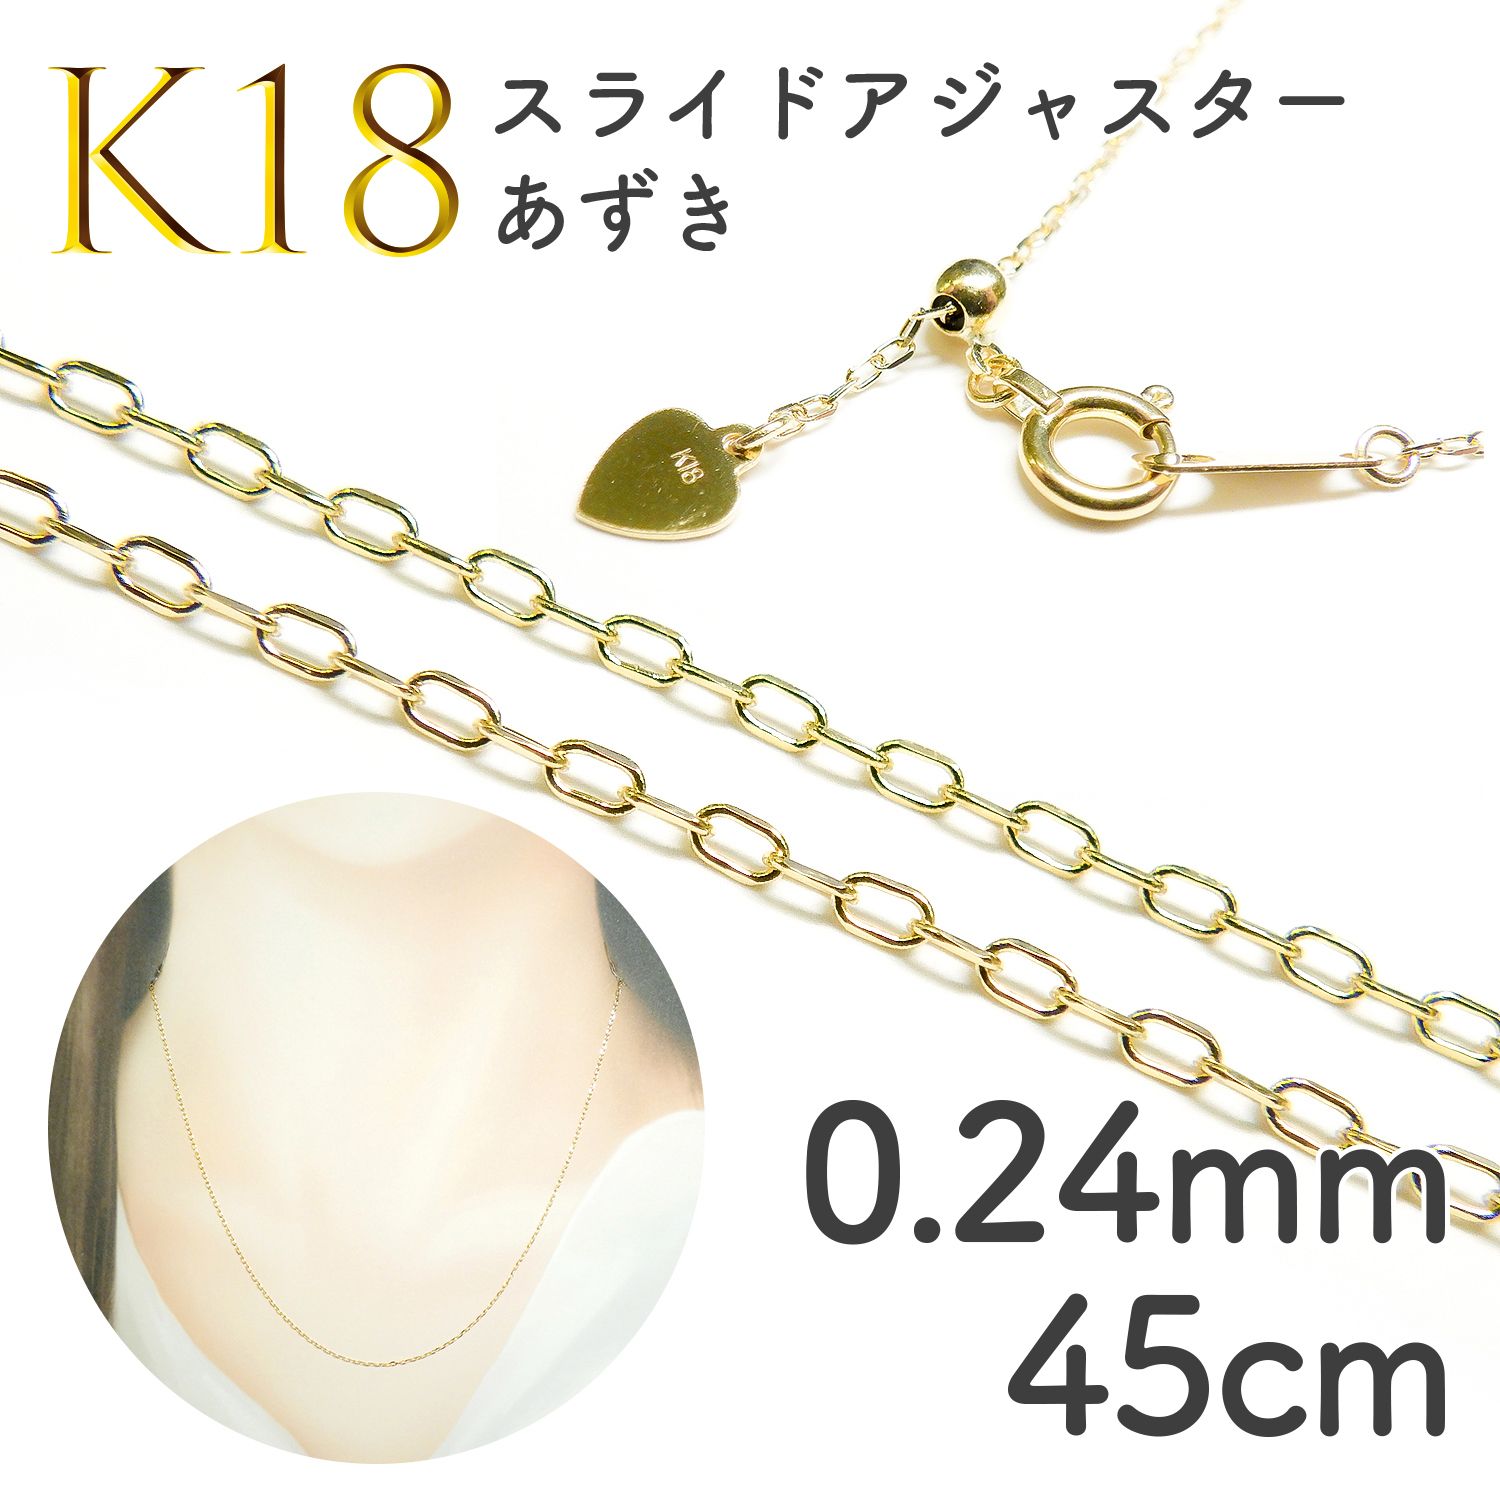 K18スライドアジャスターチェーン あずき[008]0.24mm 45cm | TOP STONE